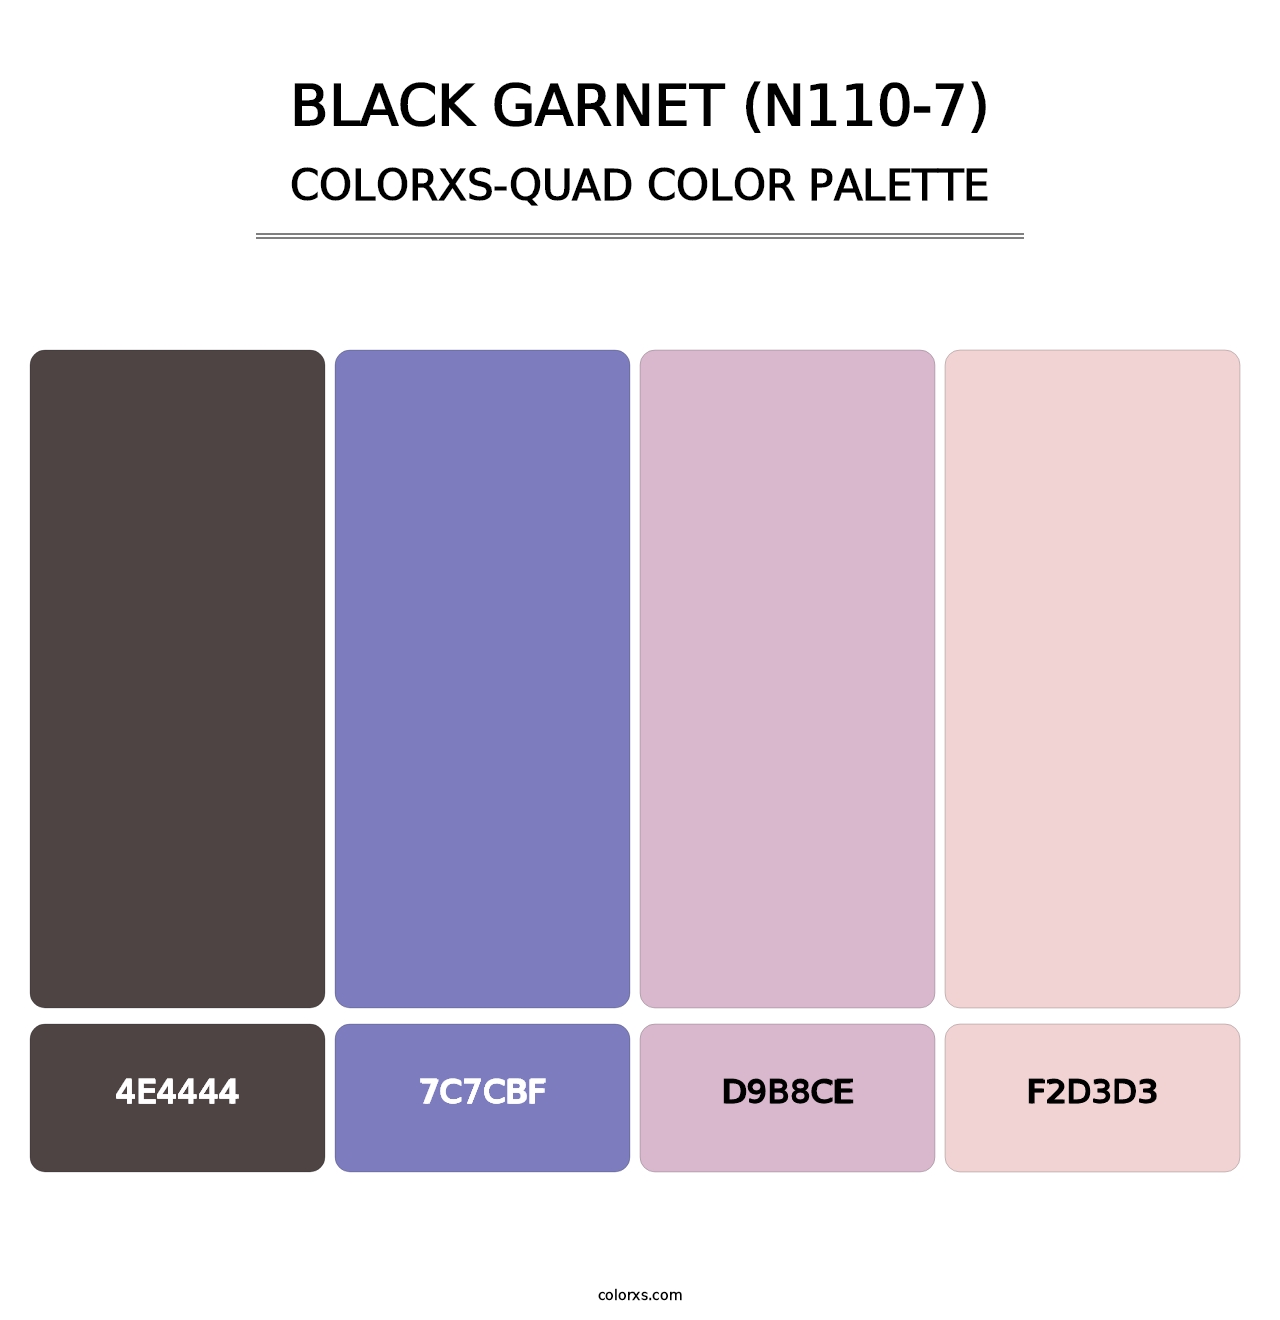 Black Garnet (N110-7) - Colorxs Quad Palette